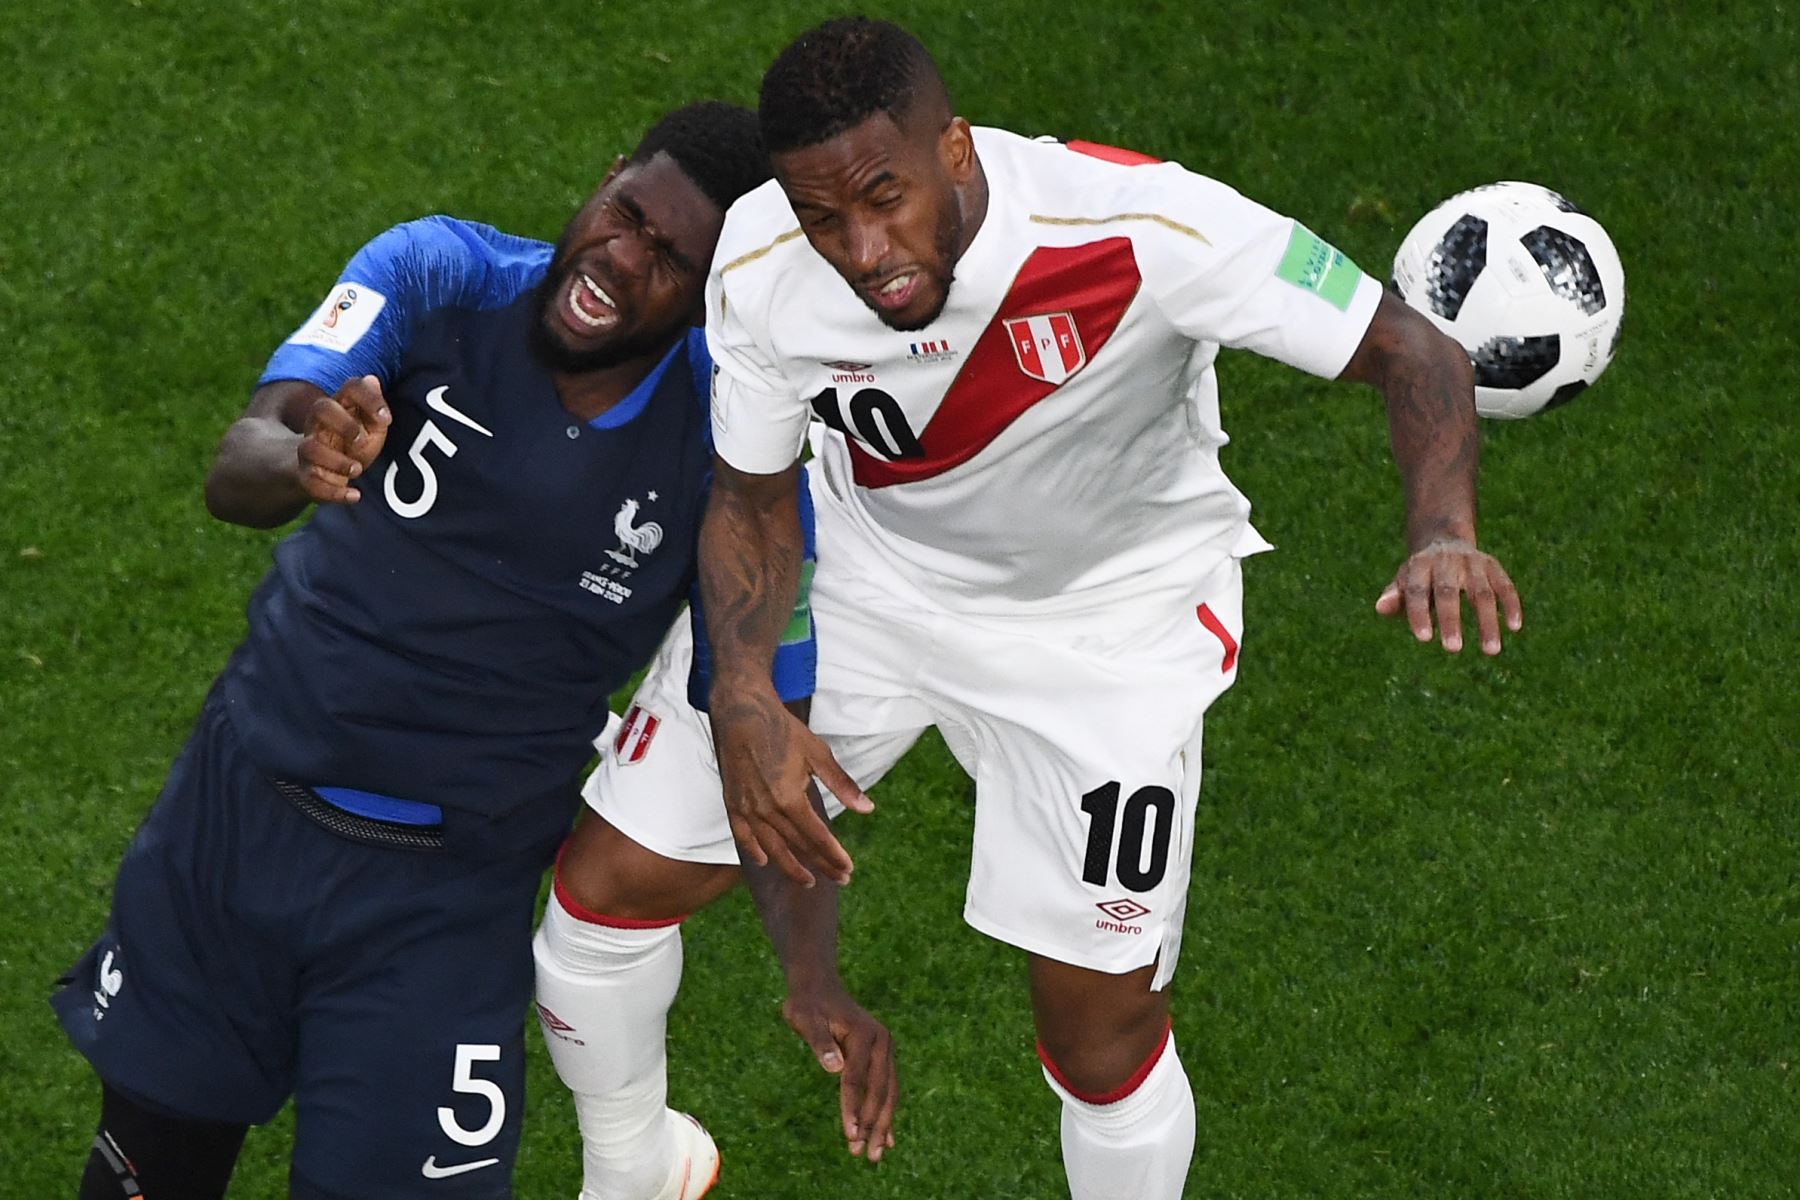 El defensa de Francia Samuel Umtiti (L) y el delantero de Perú Jefferson Farfan compiten por el balón durante el partido de fútbol del Grupo C de la Copa Mundial Rusia 2018 entre Francia y Perú en el Ekaterinburg Arena en Ekaterinburg el 21 de junio de 2018.
Foto: AFP